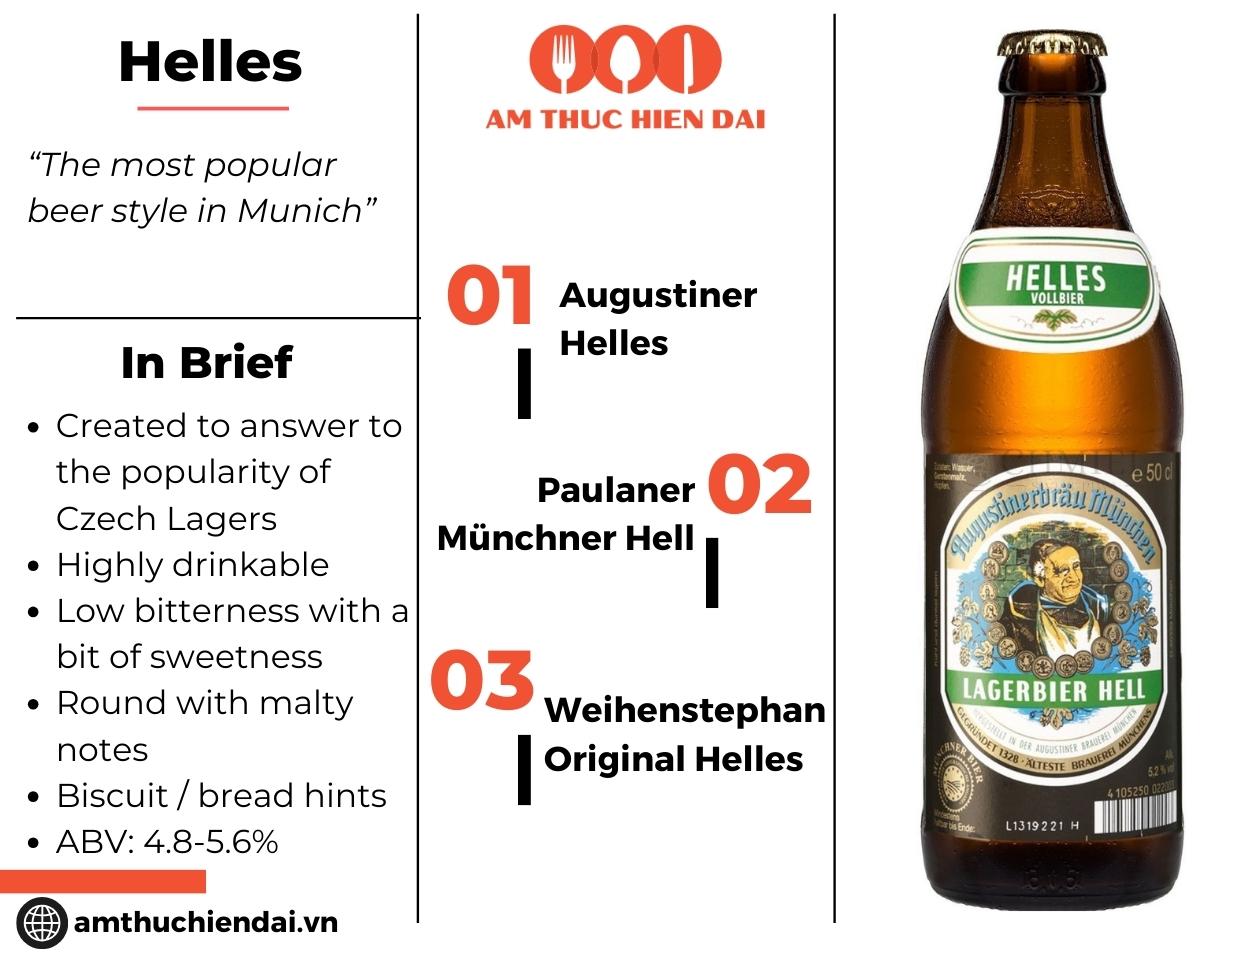 Helles Beers caractheristics